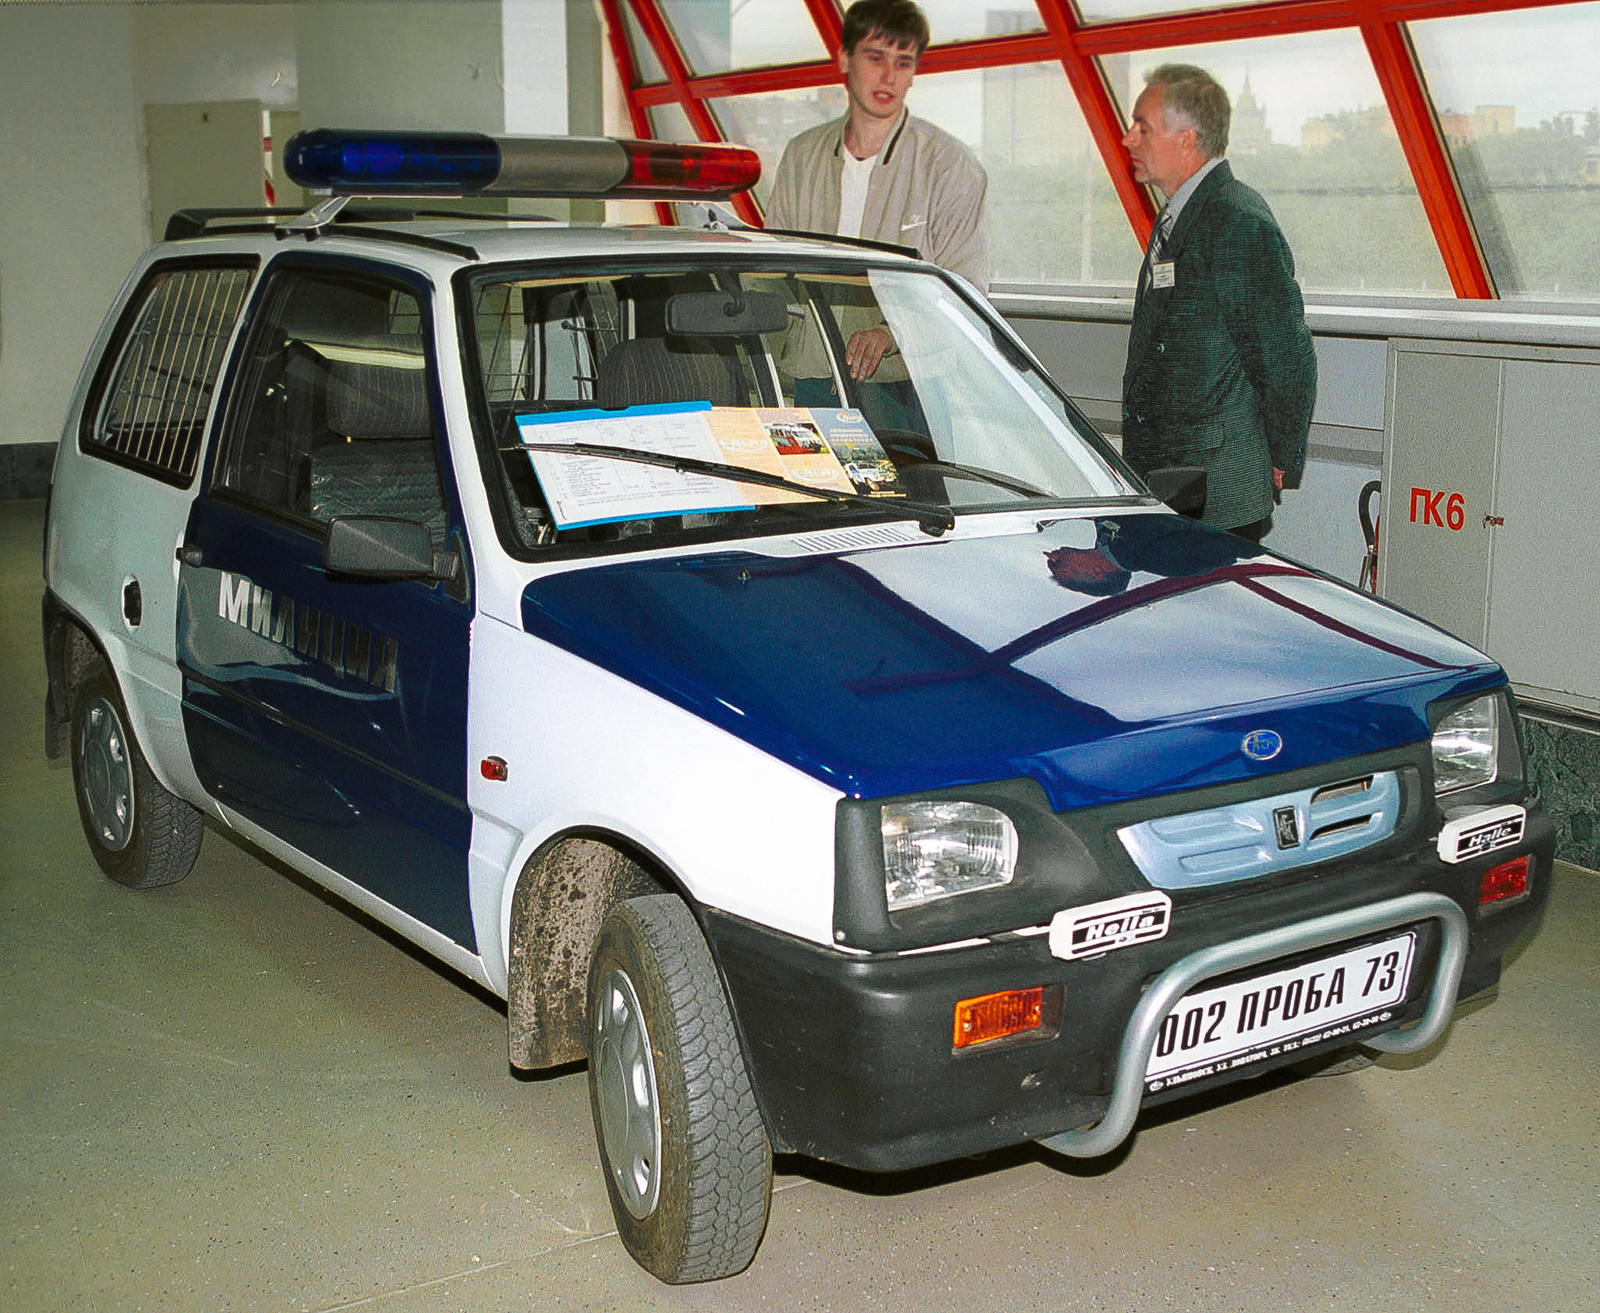 国際展覧会「特殊車両-2001」。「オカ」が初めて内務省で利用されるように勧められている。